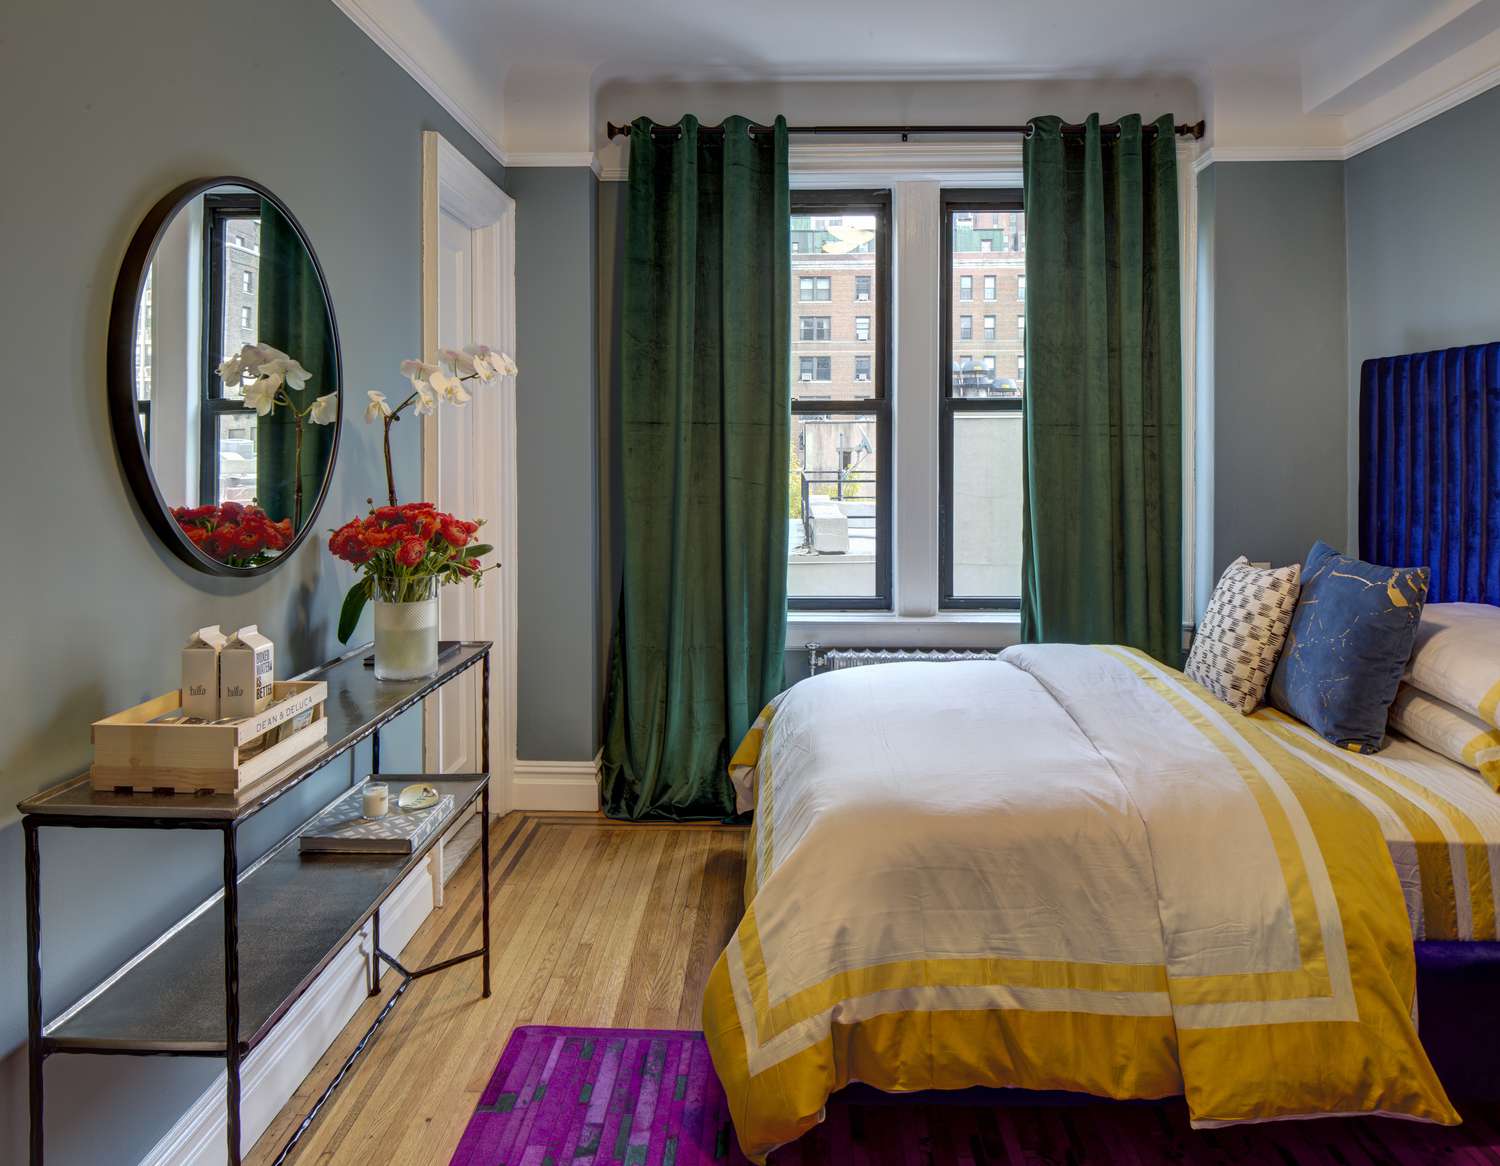 Farbenfrohes Schlafzimmer mit grünen Vorhängen, blaugrünen Wänden und weißer und gelber Bettdecke.